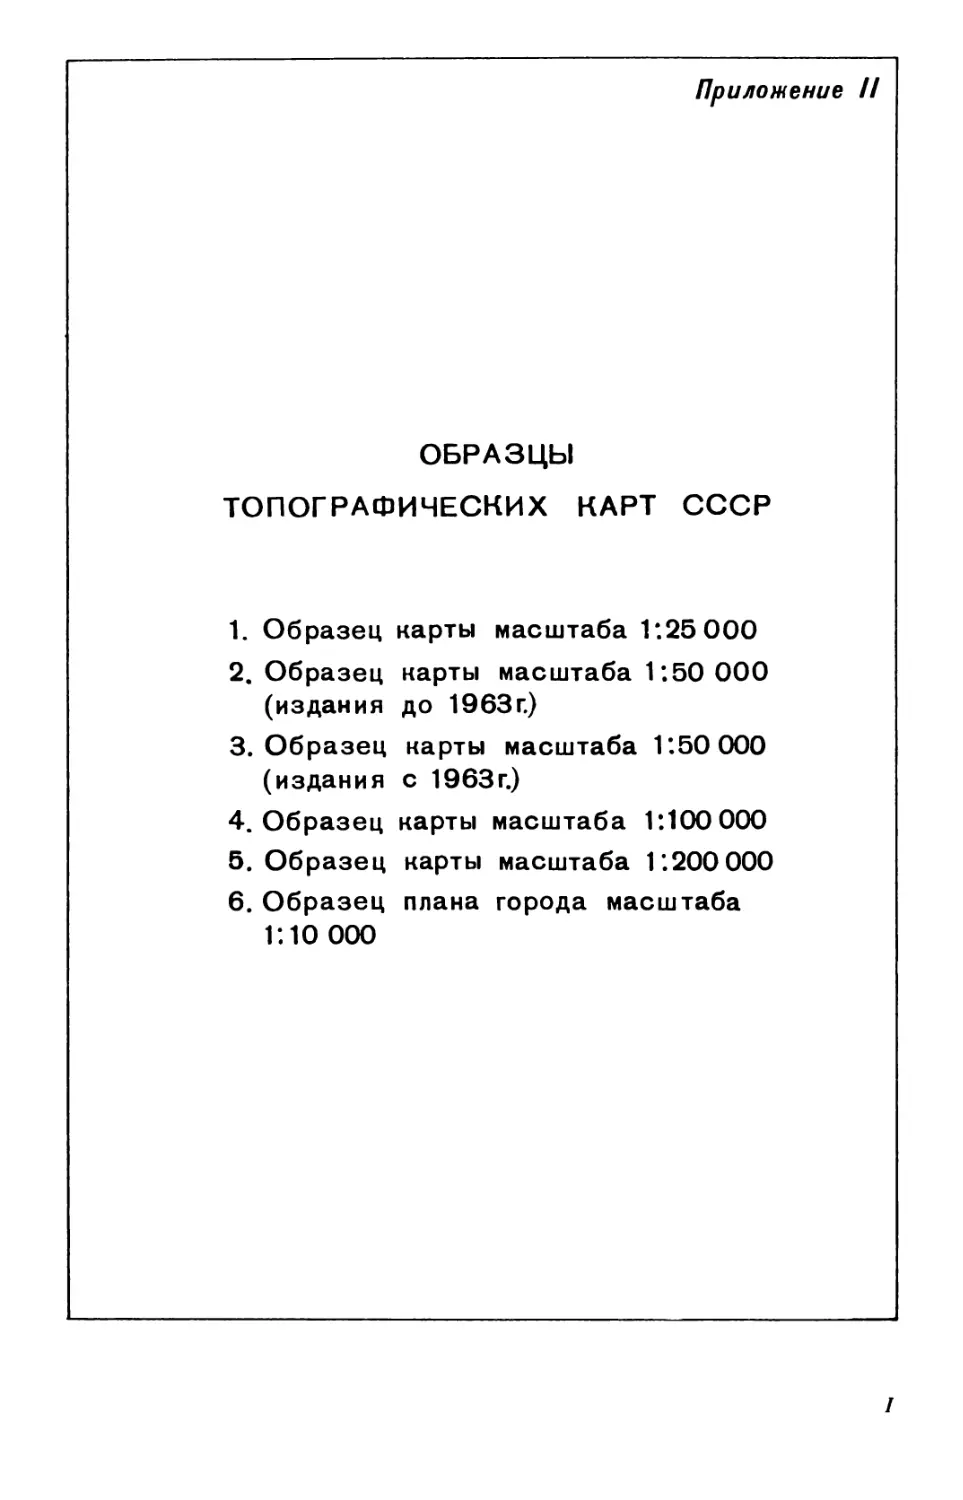 II. Образцы топографических карт СССР